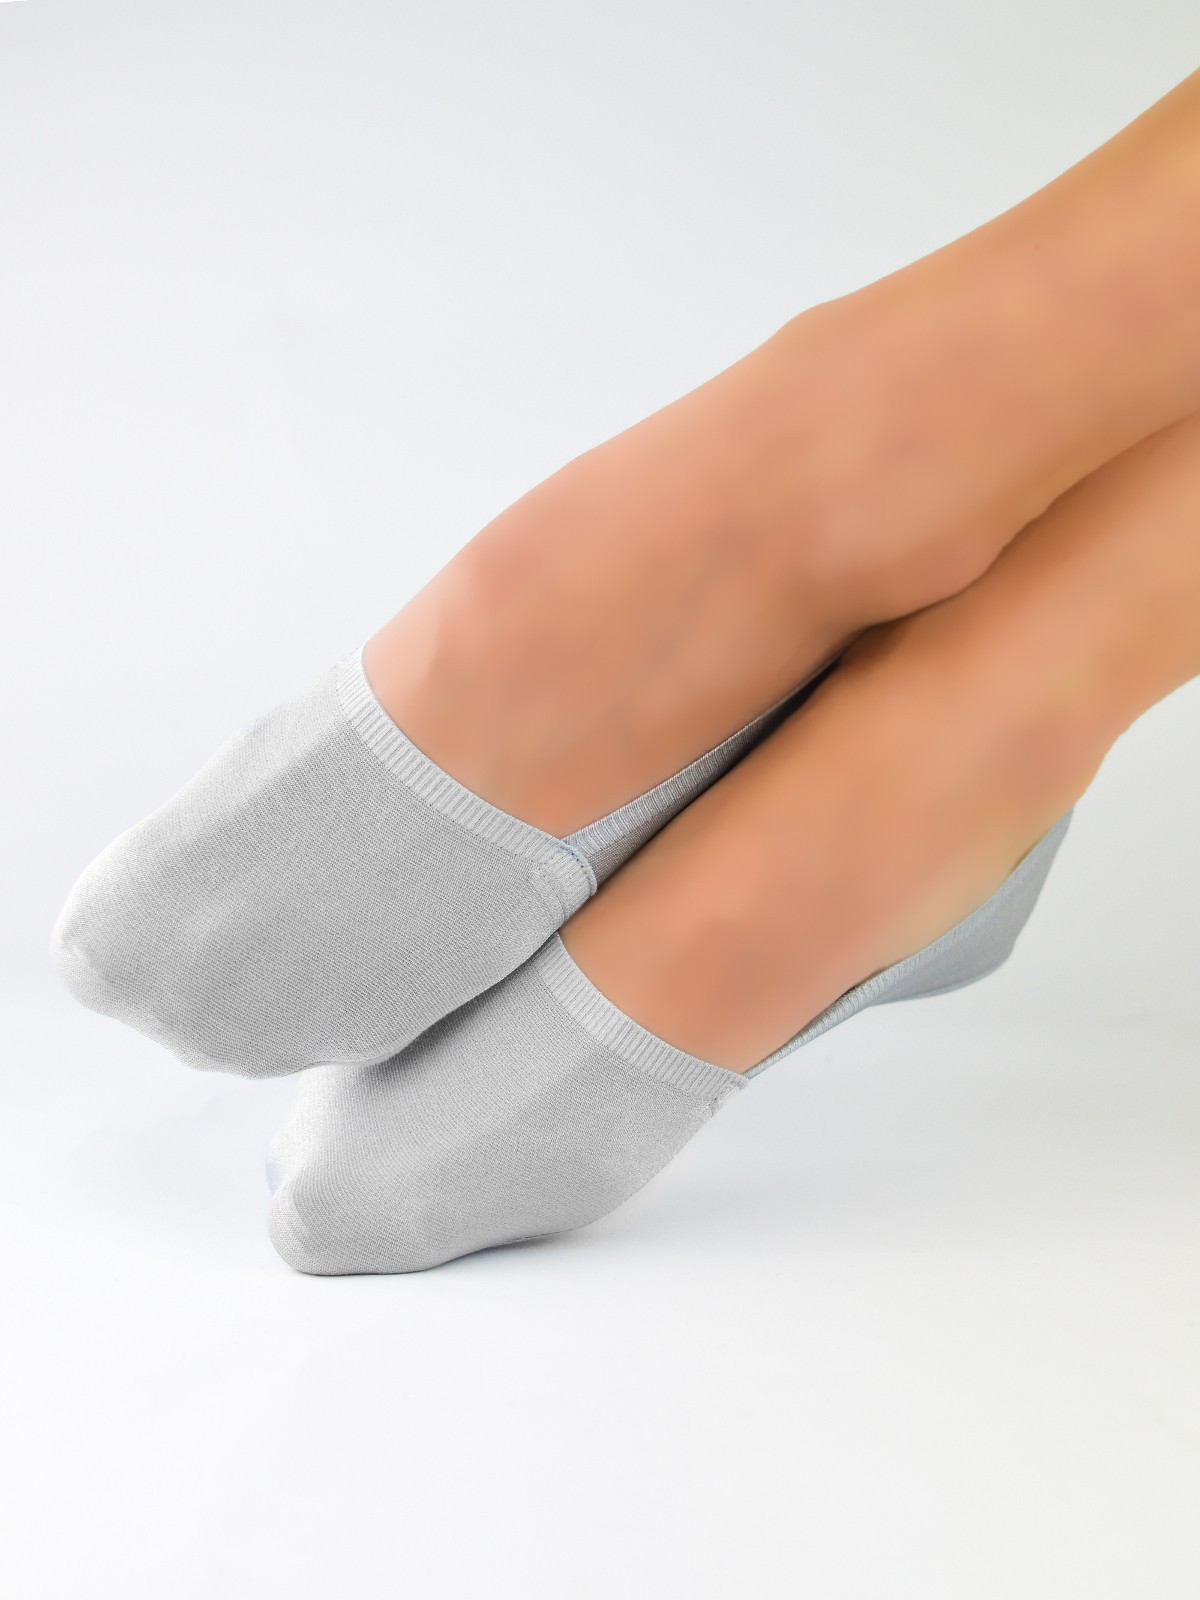 Dámské ponožky - baleríny Noviti SN024 Laserové, Silikon, ABS bílá 36-41